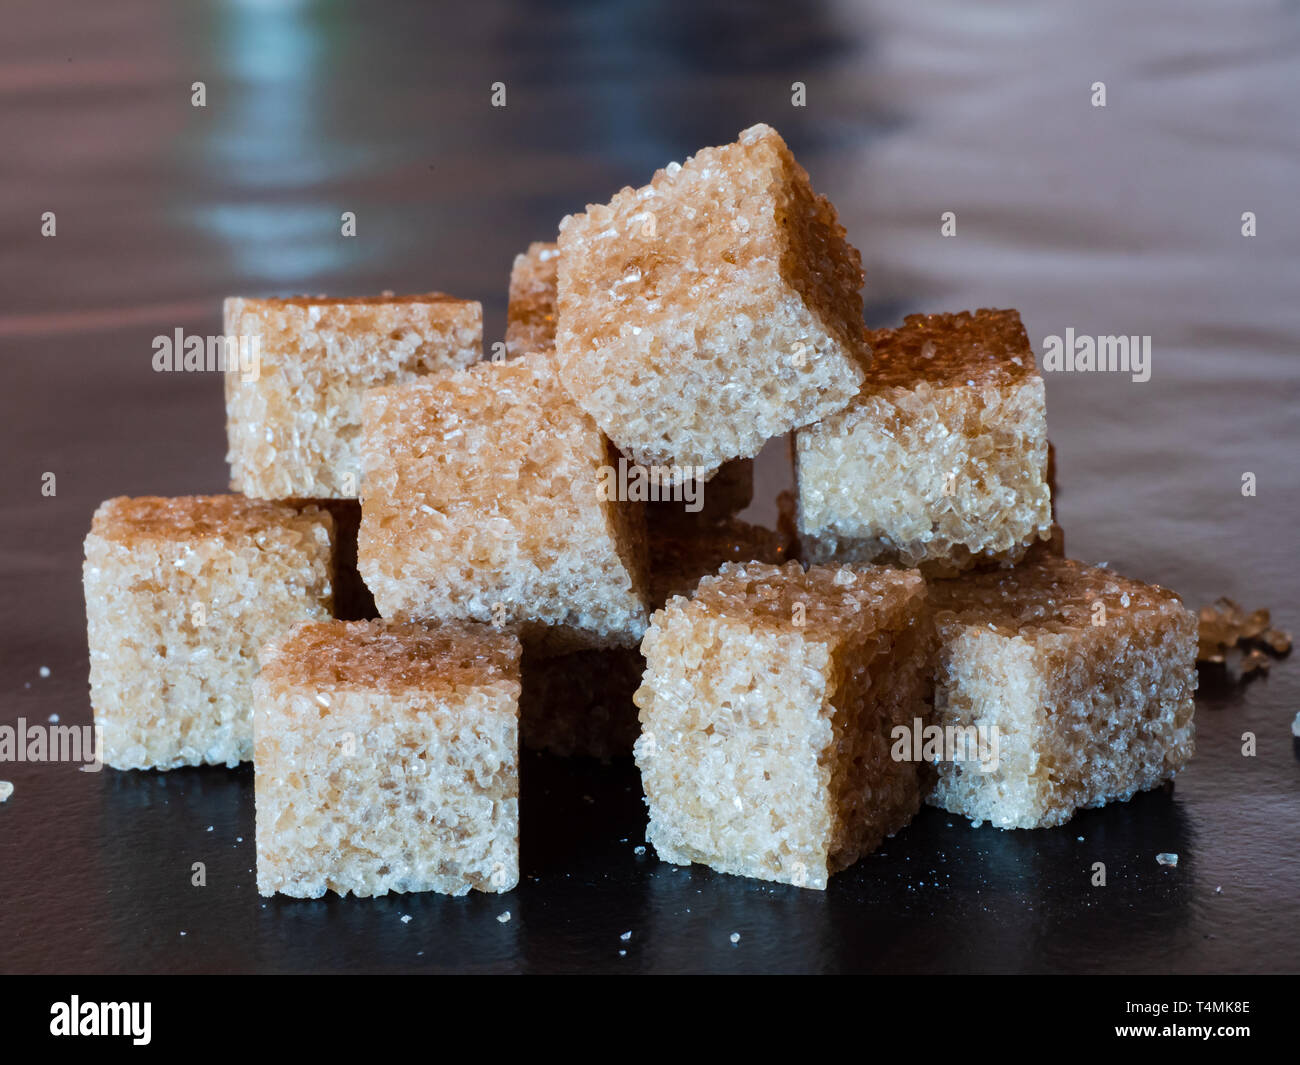 Tas de cubes de sucre brun sur une surface noire. Banque D'Images